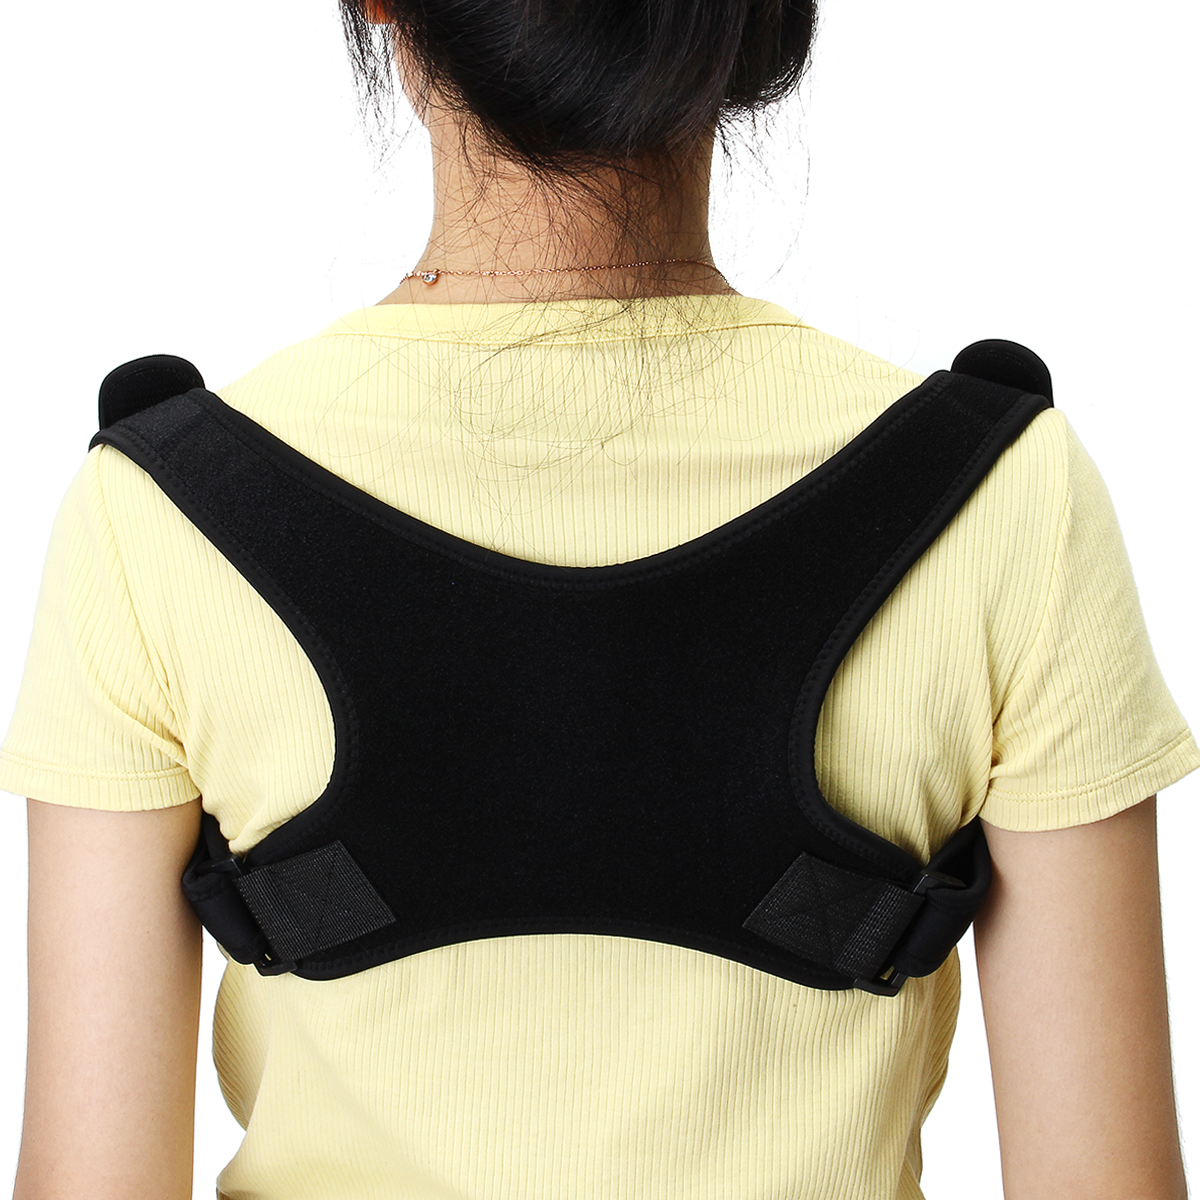 

Adjustable Posture Corrector Humpback Correction Belt Pain Relief Back Spine Support